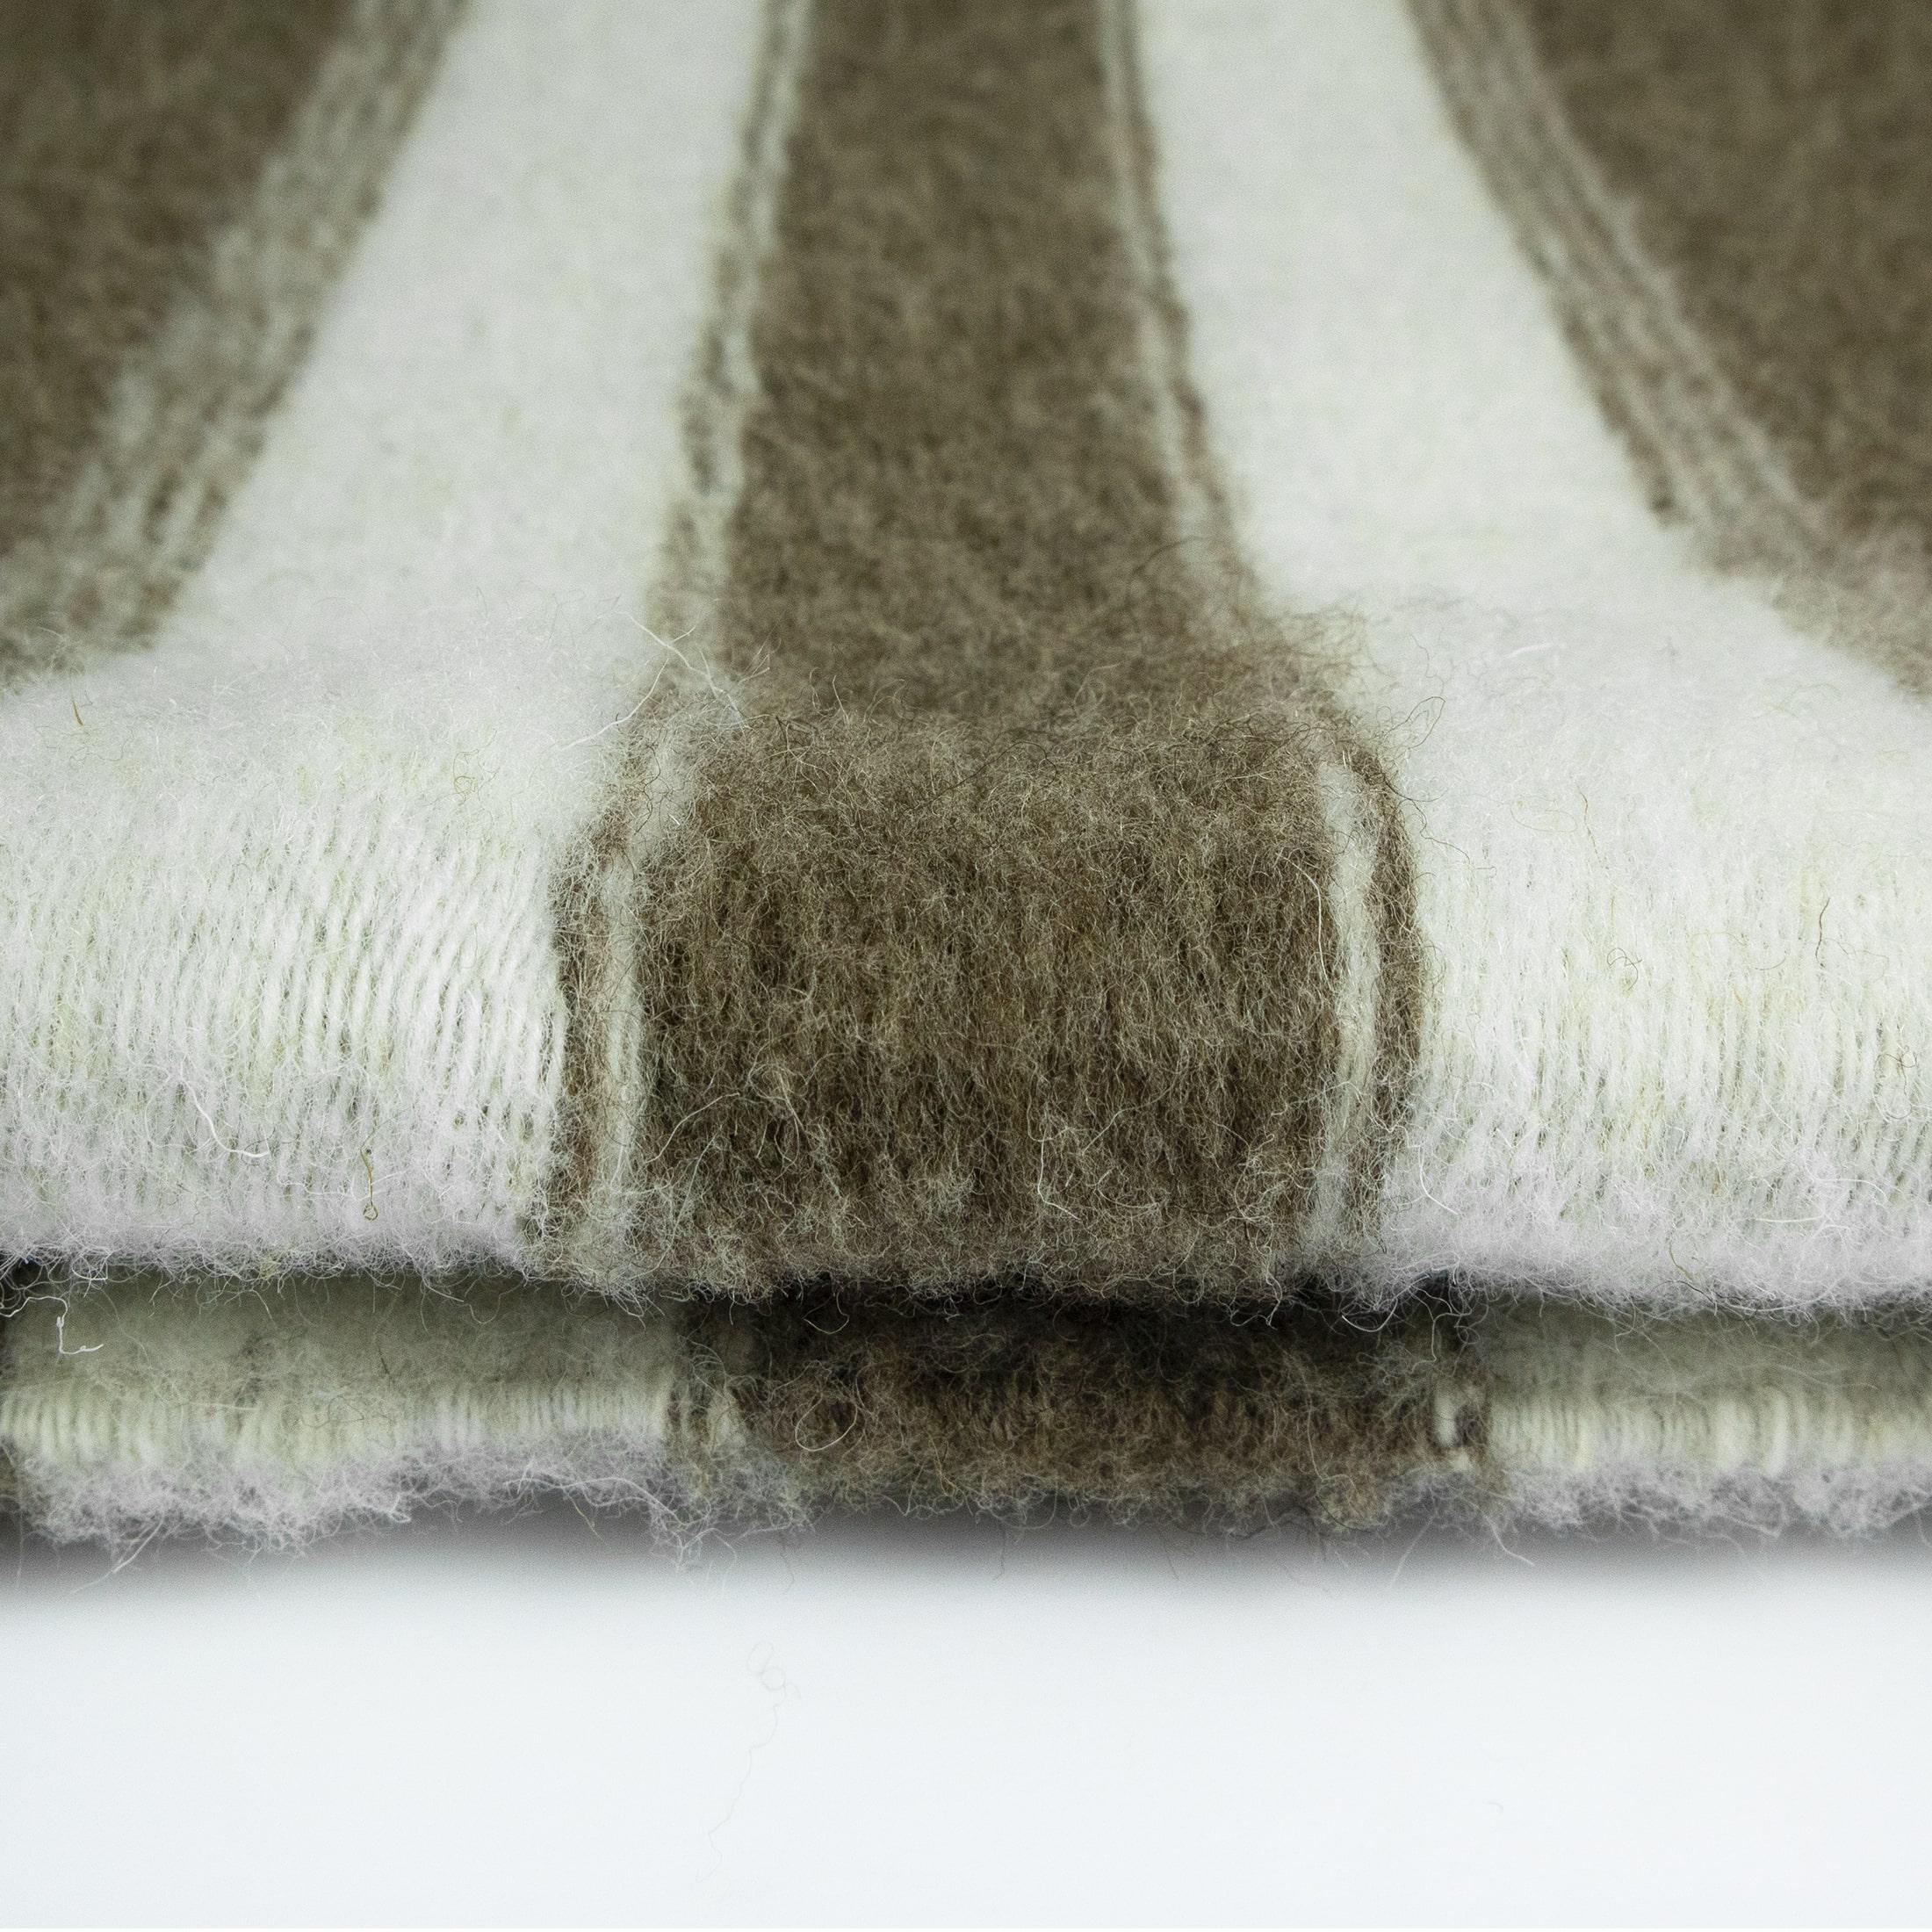 Tapis Menizia #04 ist ein handgewebter Teppich mit einem eklektischen Stil aufgrund seiner einzigartigen Farbe, Muster und Textur. 
Dieser rechteckige, handgewebte Teppich hat eine gedämpfte graue Farbpalette und verspielte Streifen, die jedem Raum